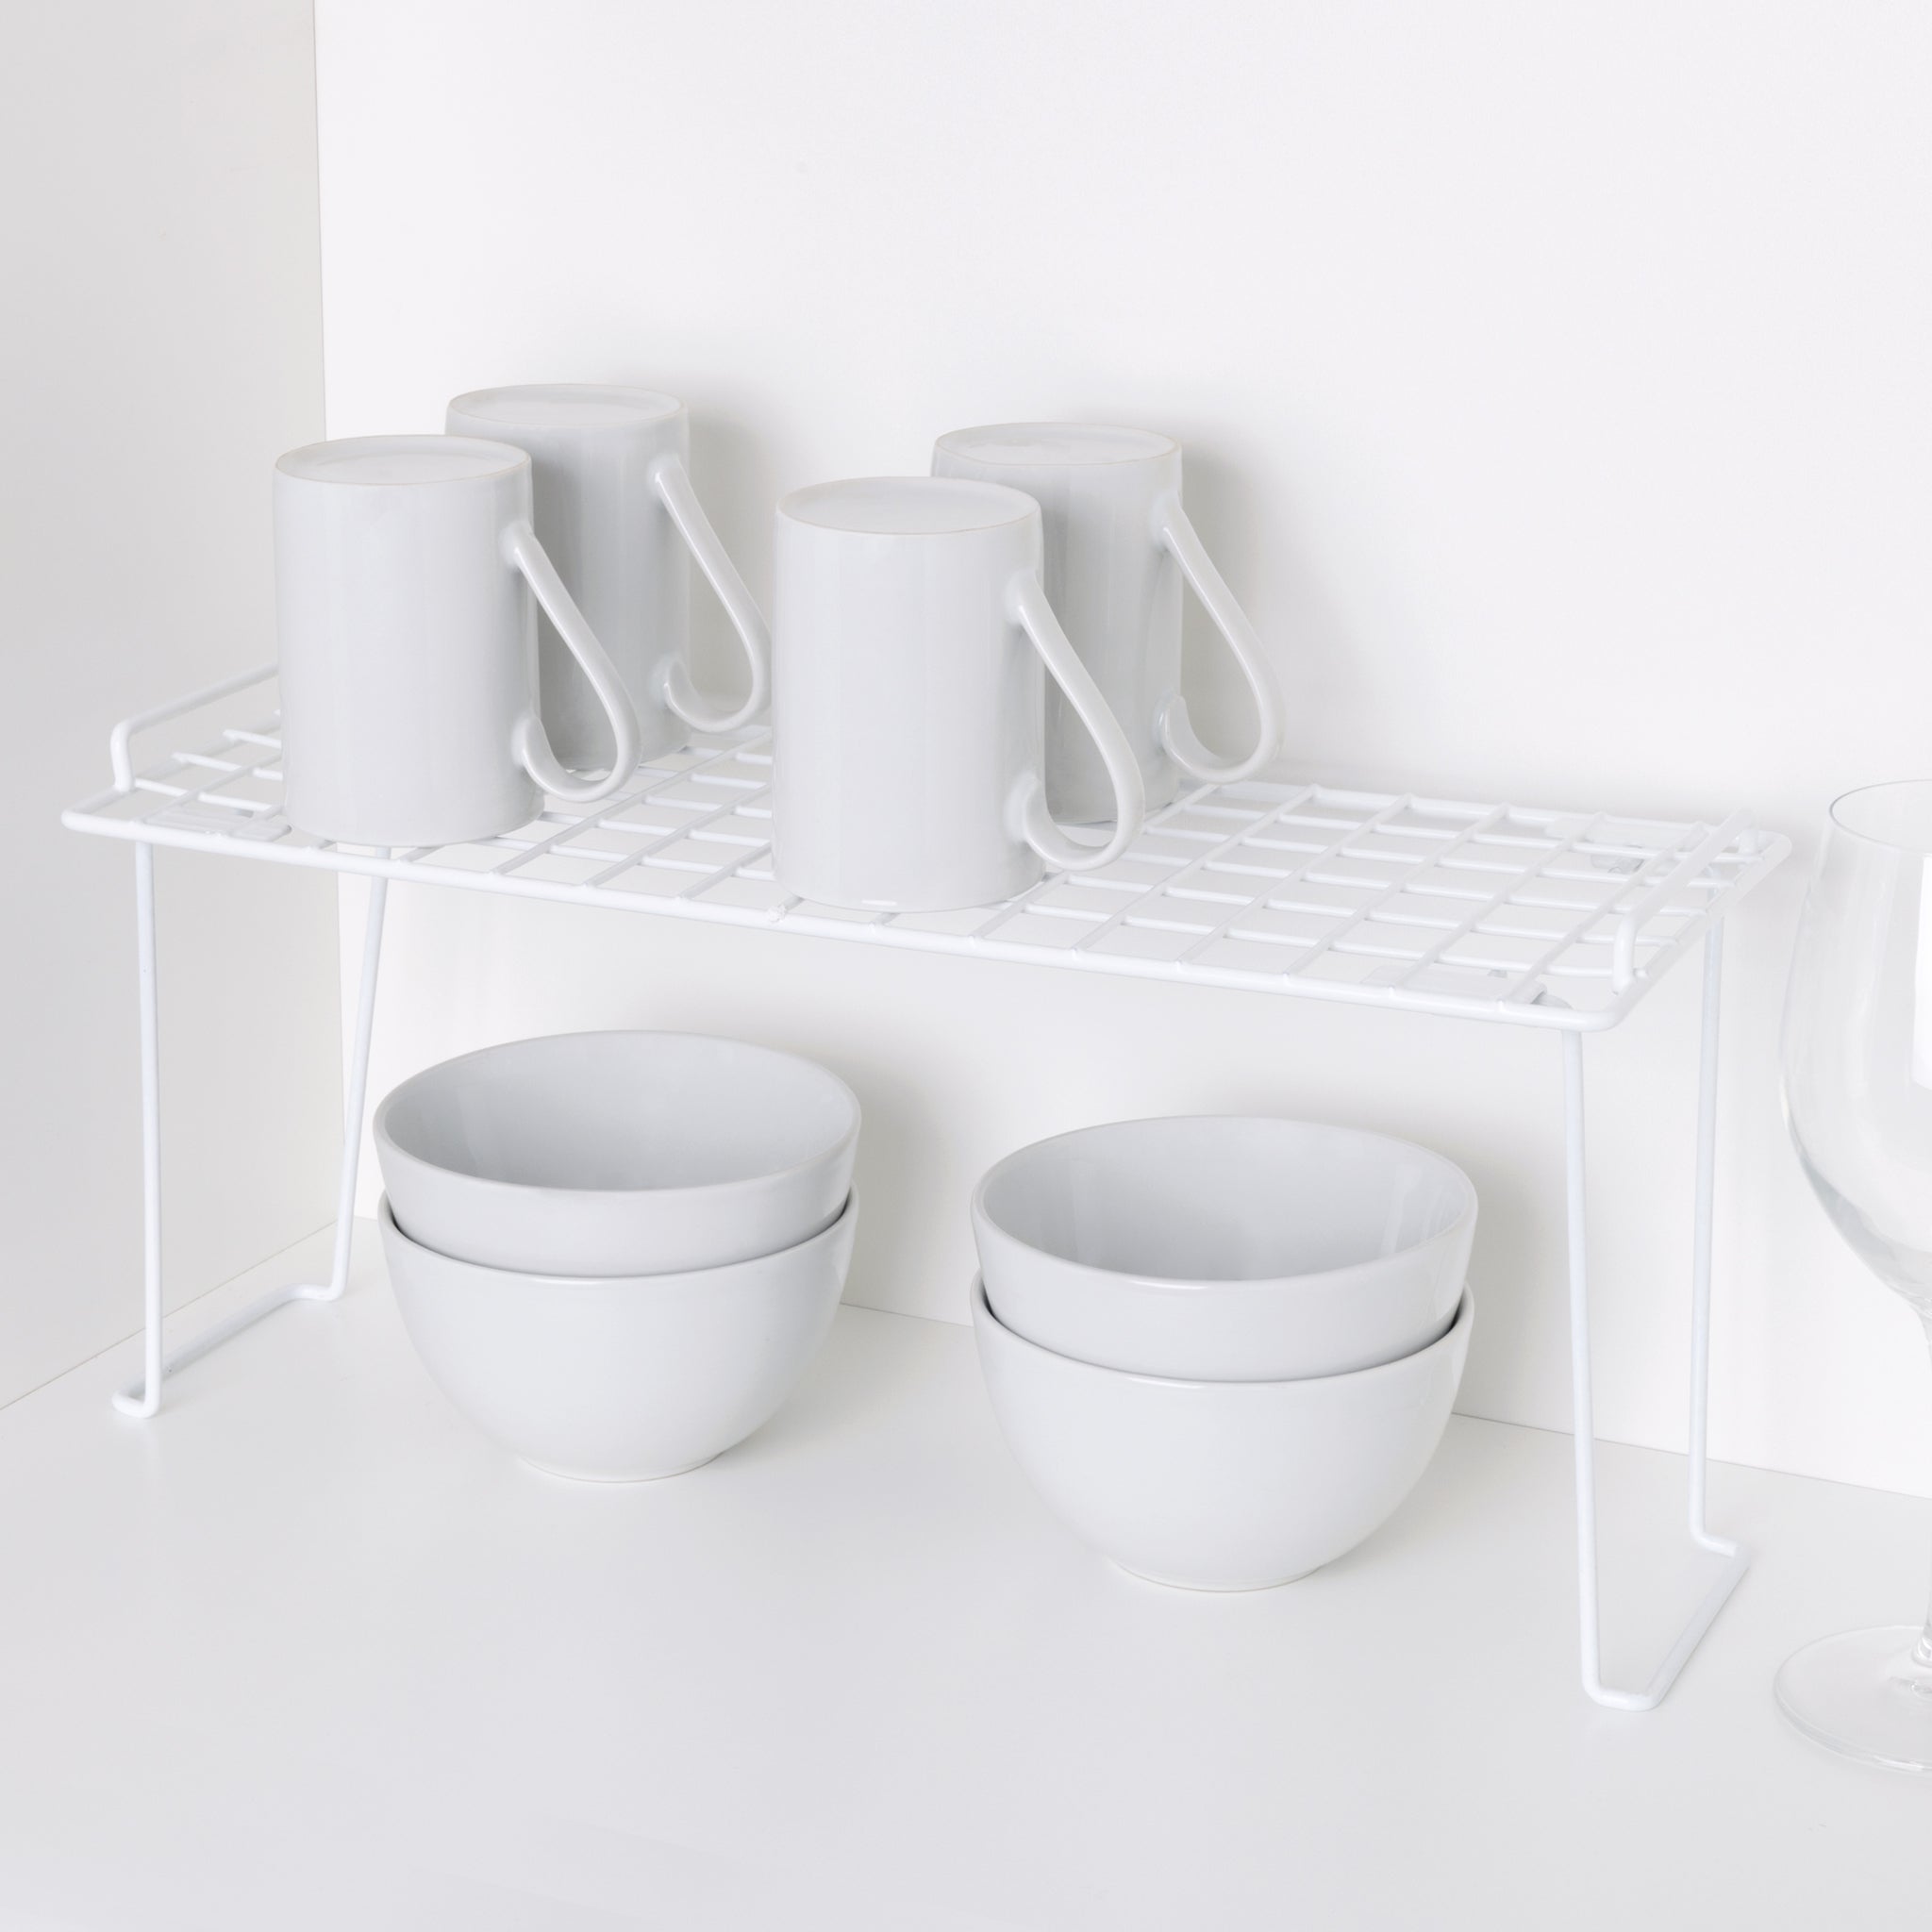 https://www.shopsmartdesign.com/cdn/shop/products/small-stacking-cabinet-shelf-rack-smart-design-kitchen-8410118-incrementing-number-725129.jpg?v=1679337094